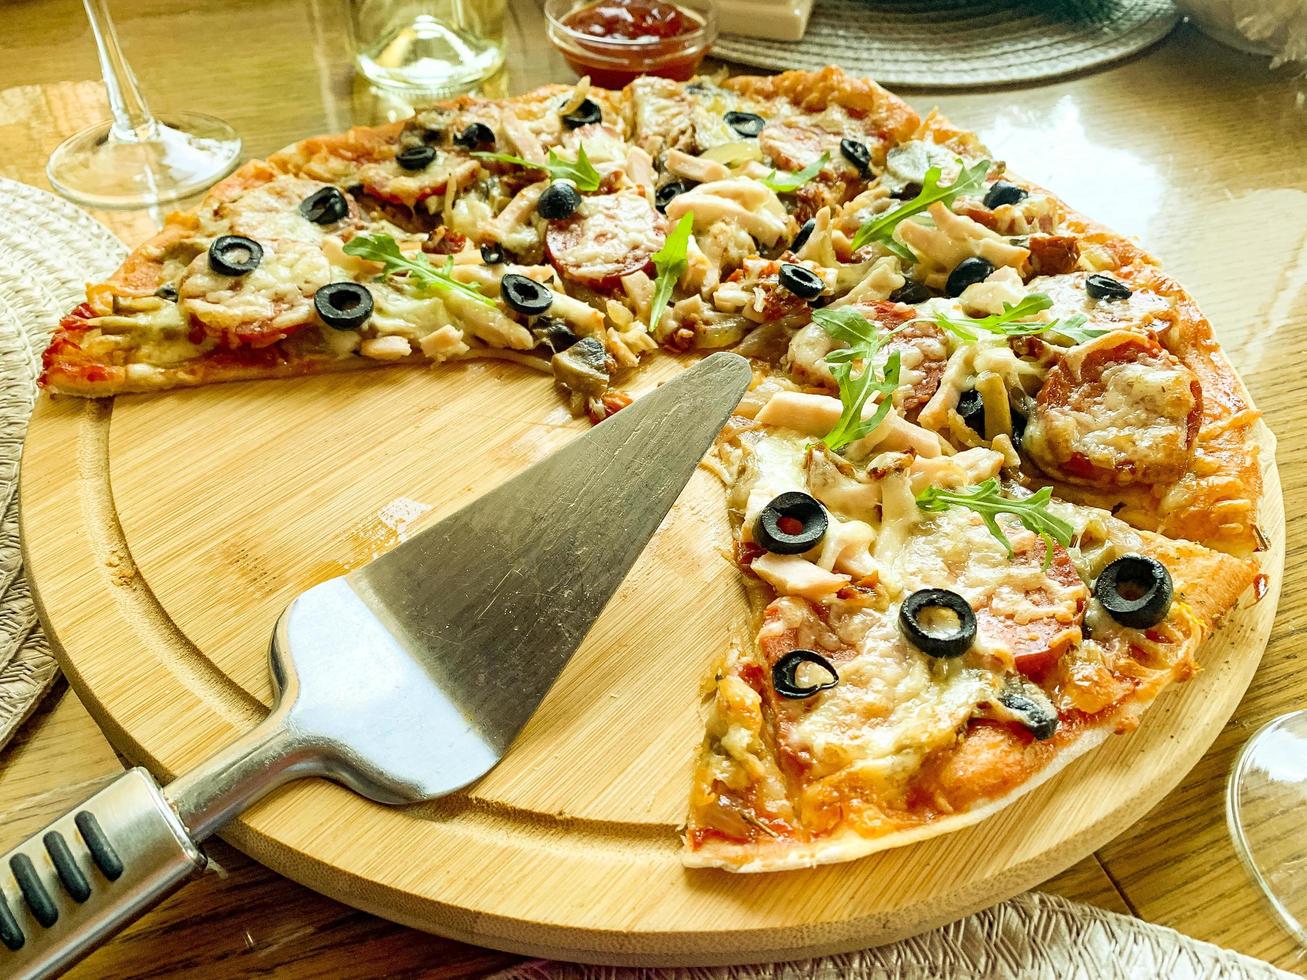 Pizza casera en rodajas con salami y aceitunas sobre placa de madera foto